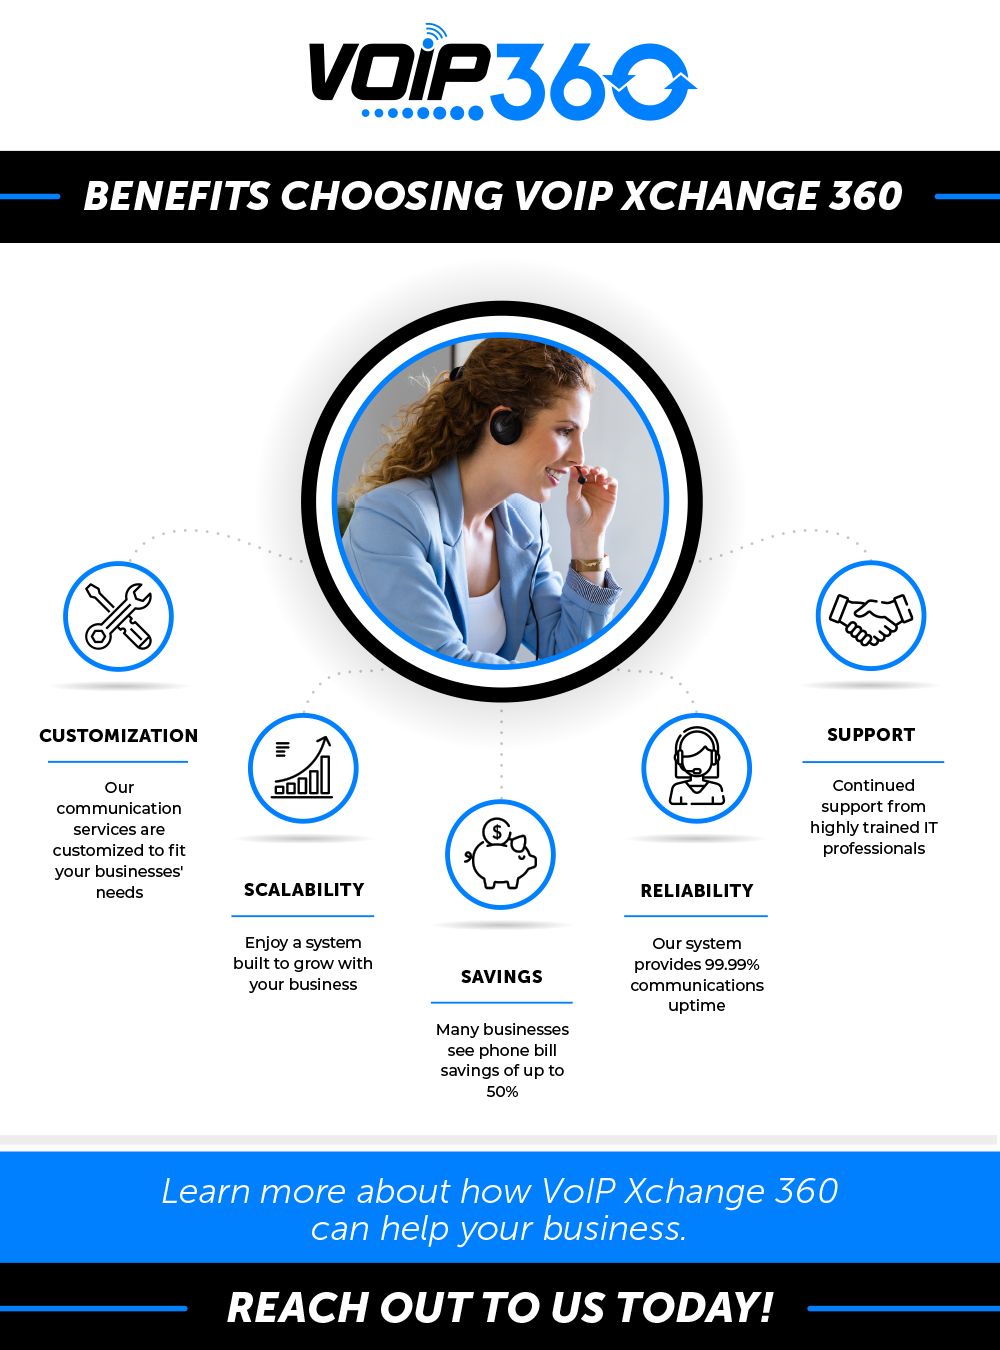 Benefits Choosing VoIP Xchange 360.jpg